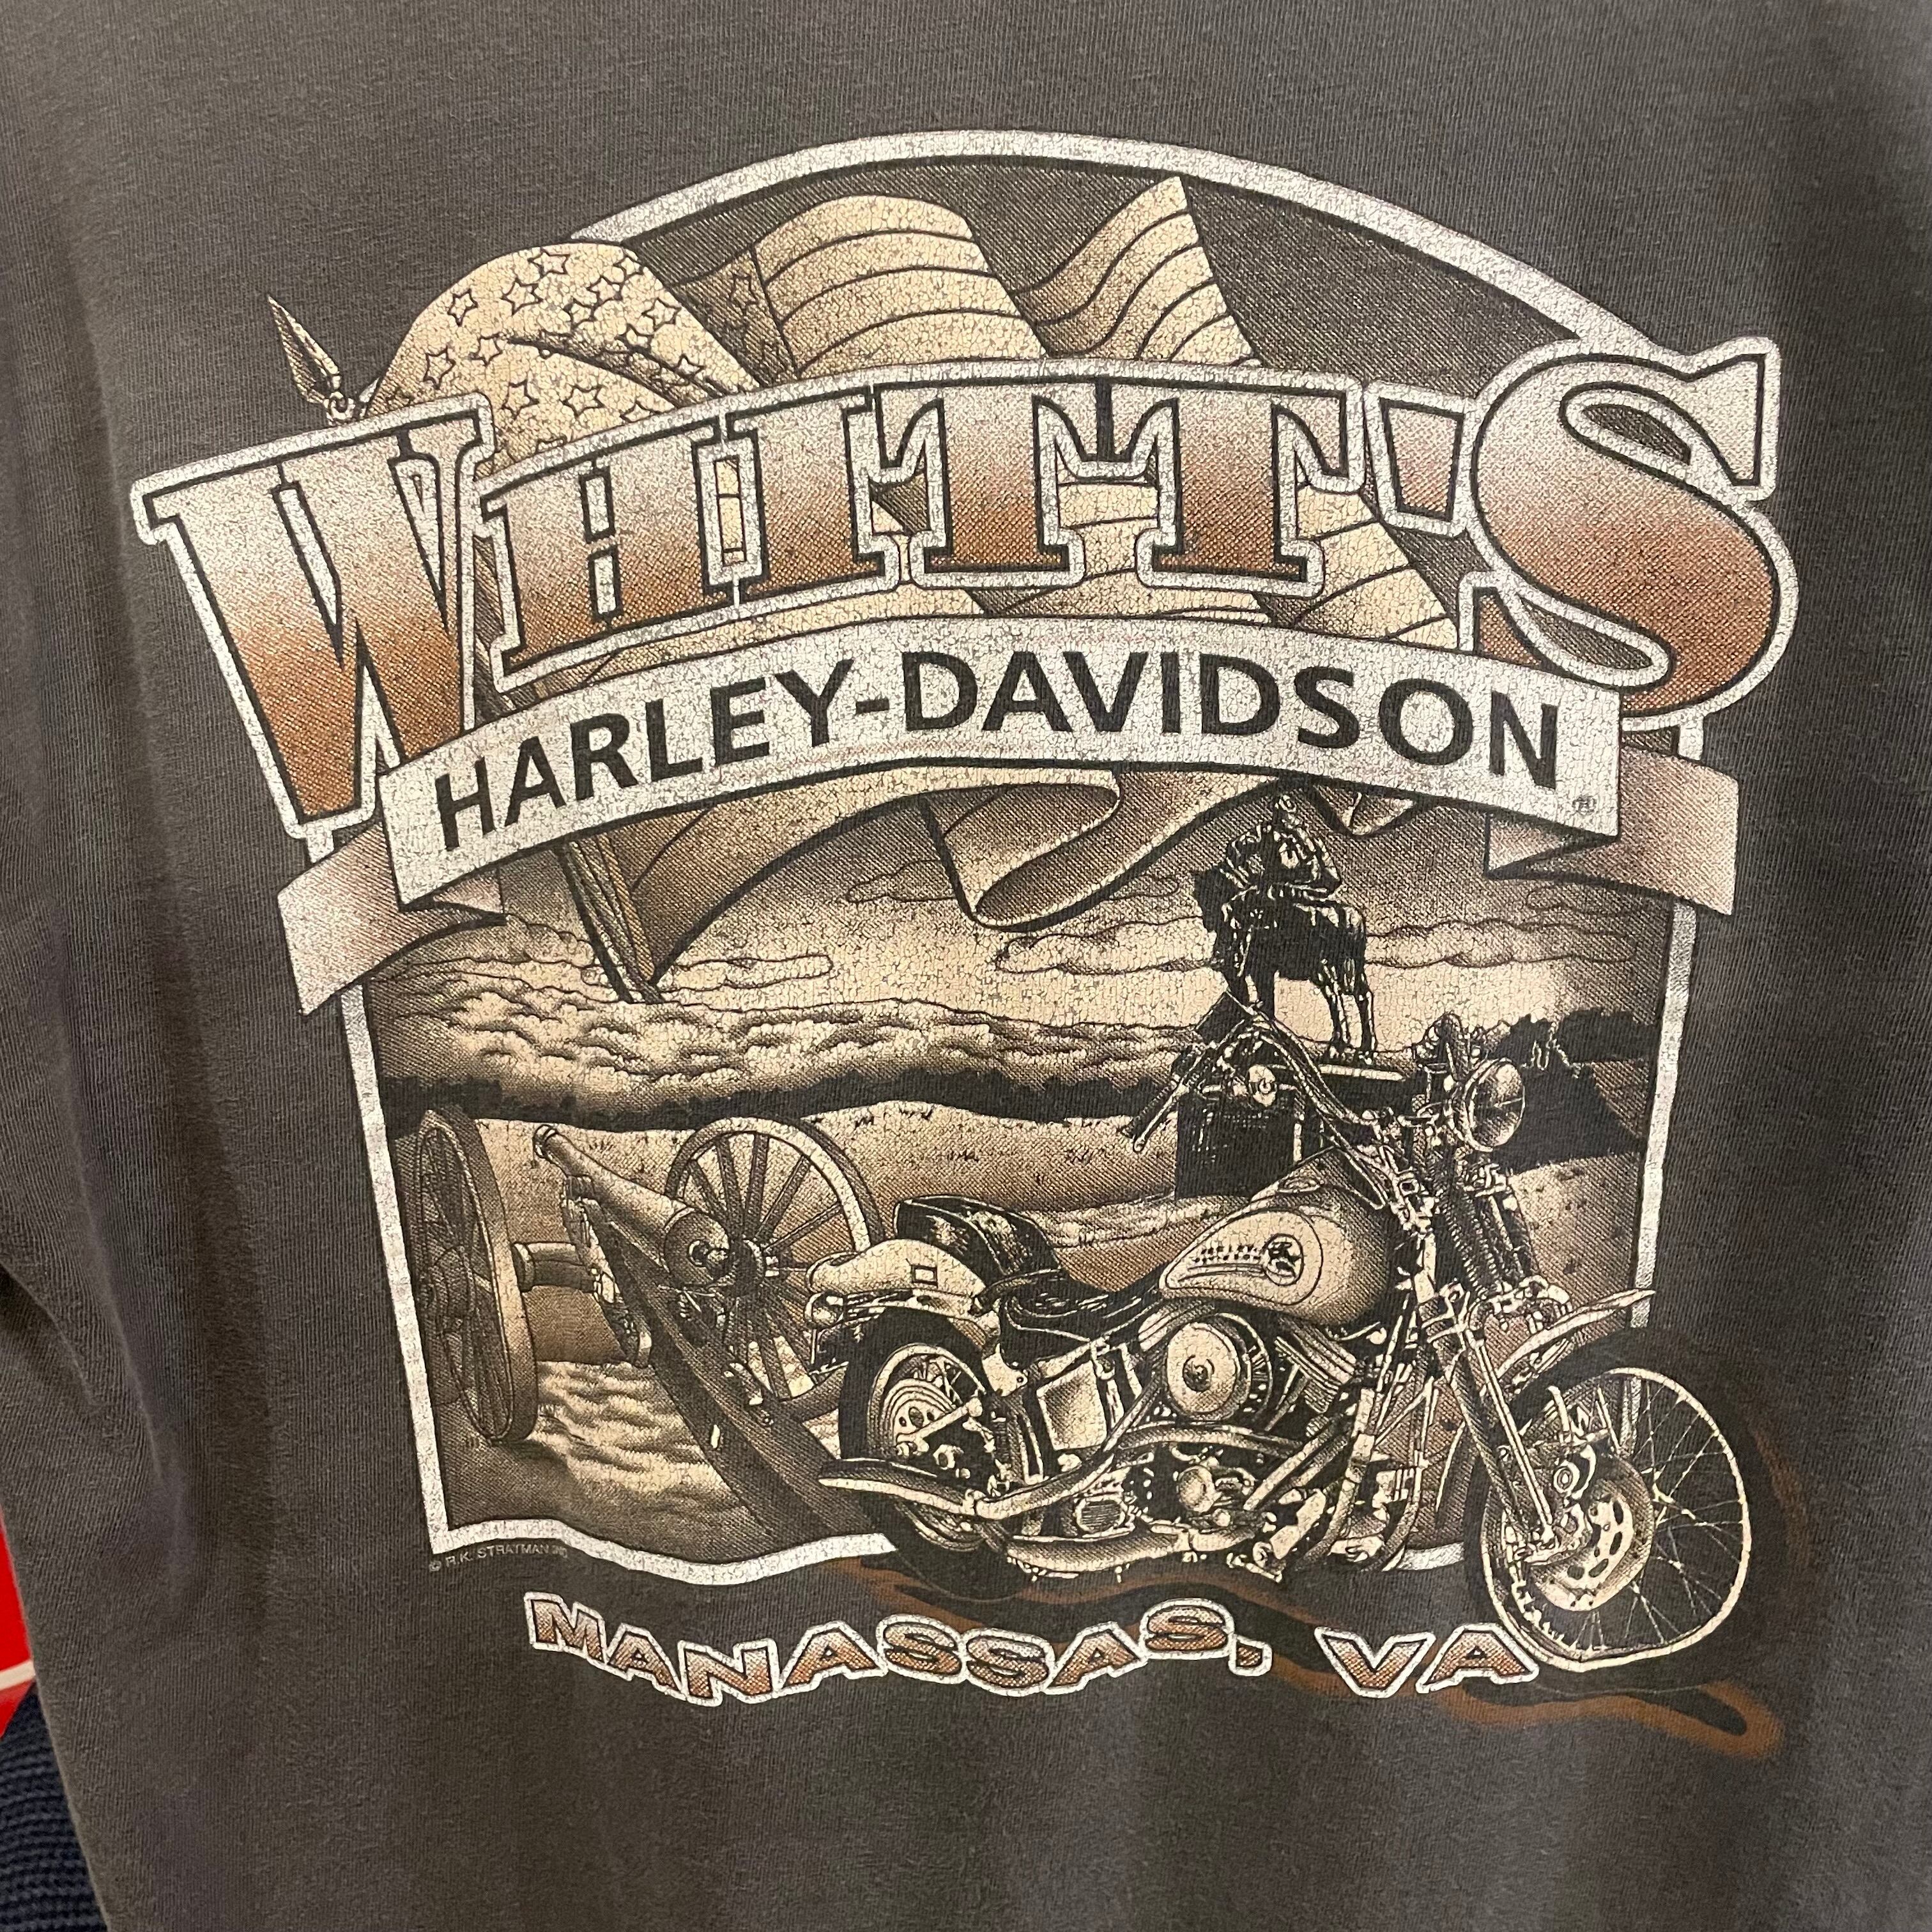 NC048 人気 90s 90年代 Hurley DAVIDSON ティシャツ